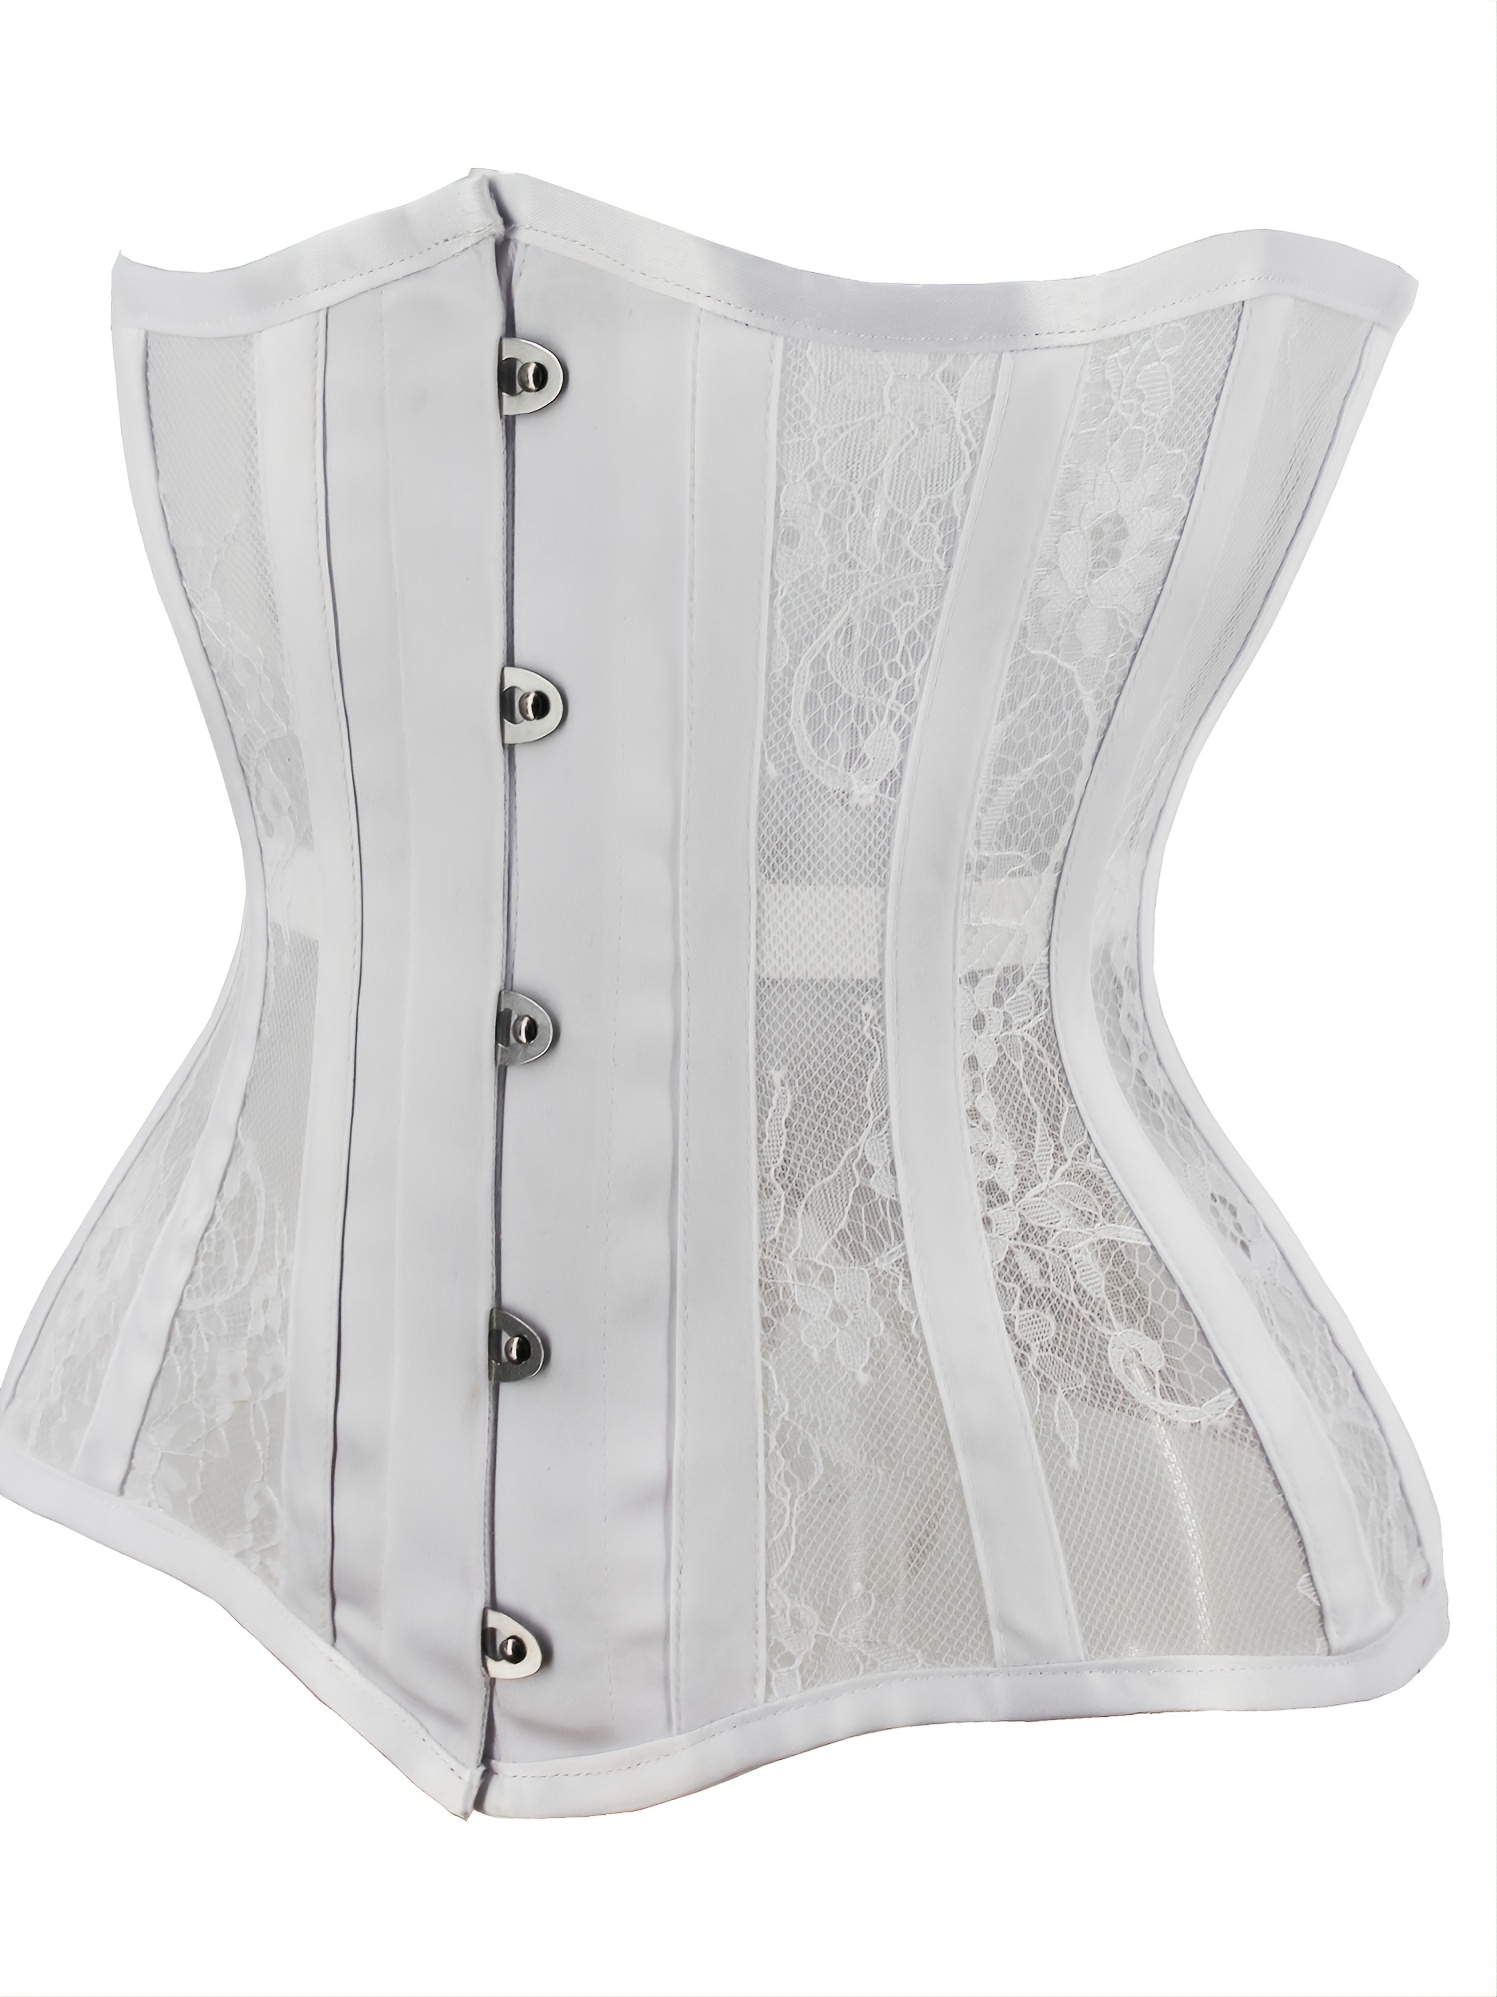 Women's Waist Training Underbust Corset Steel Boned Hourglass Body Shaper  Lace up Busiter Shapewear in White